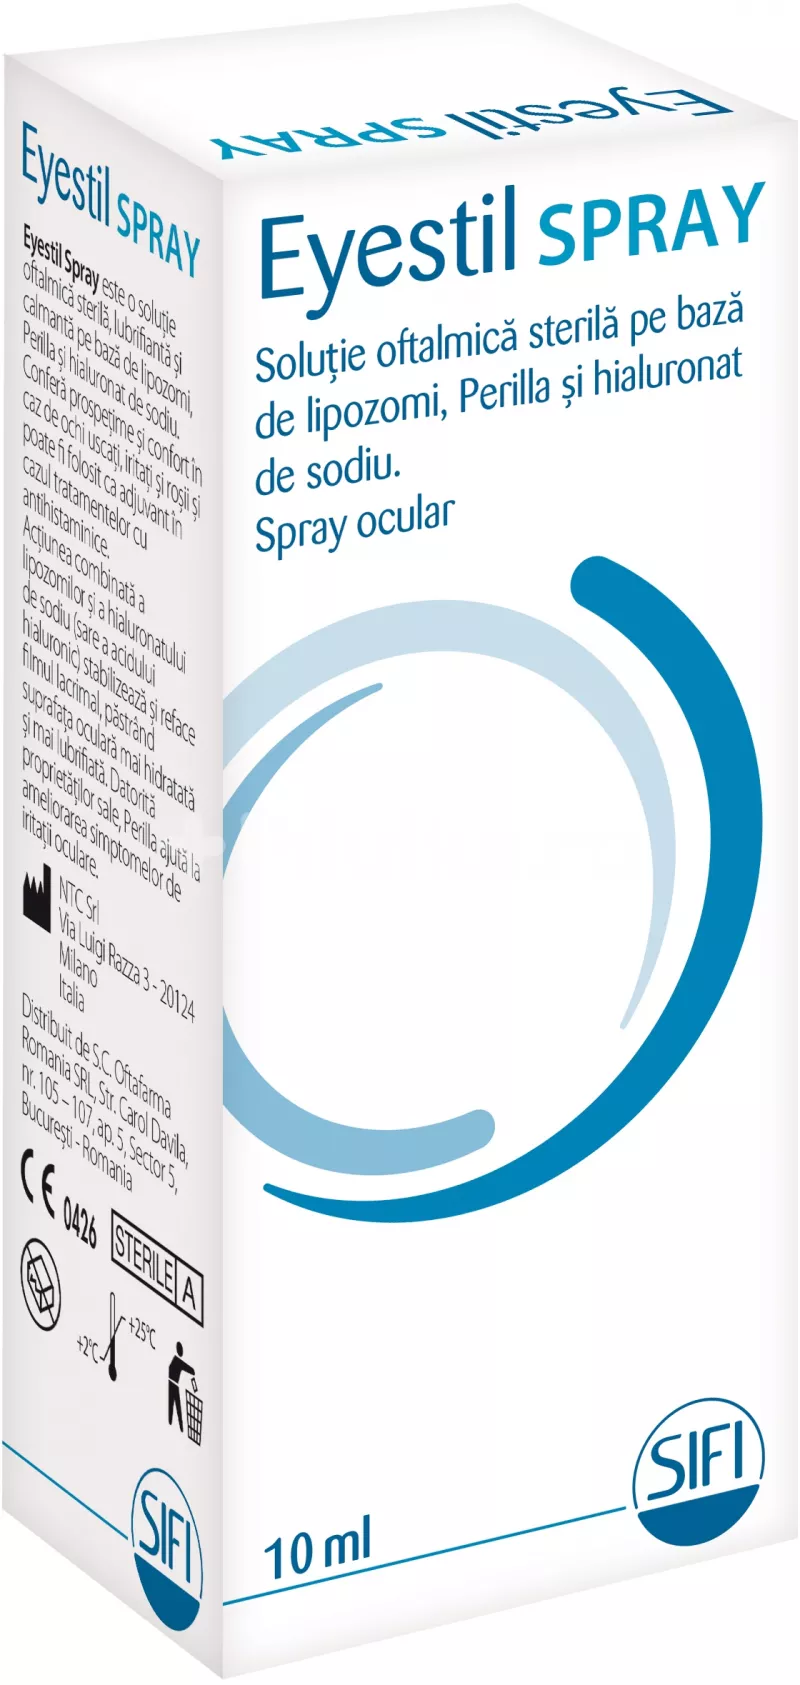 Eyestil Spray solutie oftalmica x 10ml, [],medik-on.ro